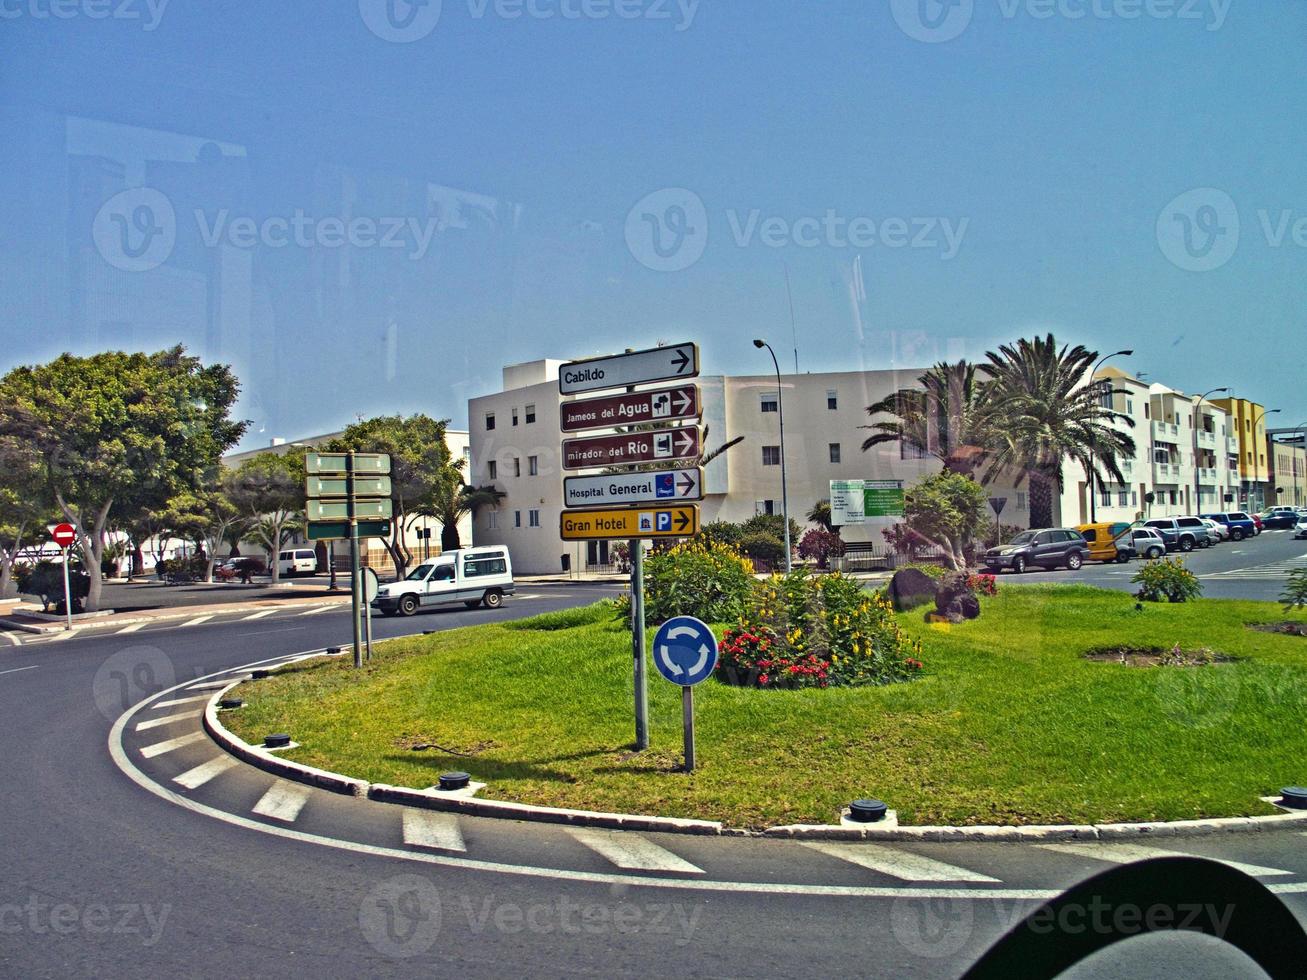 cenário com a da cidade característica branco edifícios a partir de a espanhol ilha do Lanzarote em uma caloroso verão dia foto